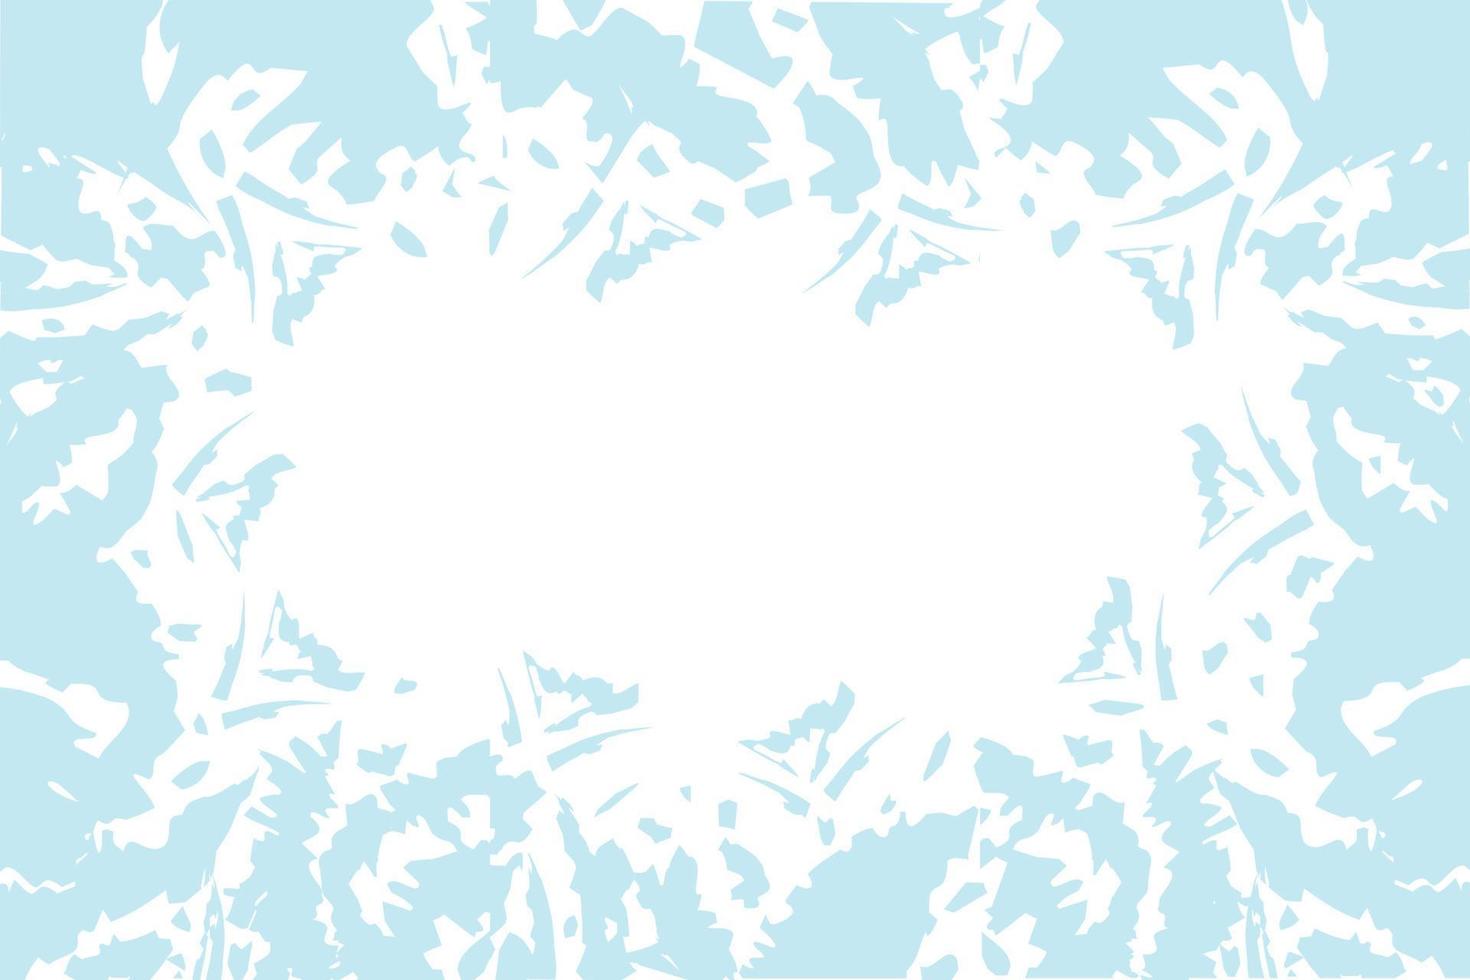 borrões heterogêneos abstratos em tons azuis invernais da moda em aquarela. textura de fundo. isolar vetor